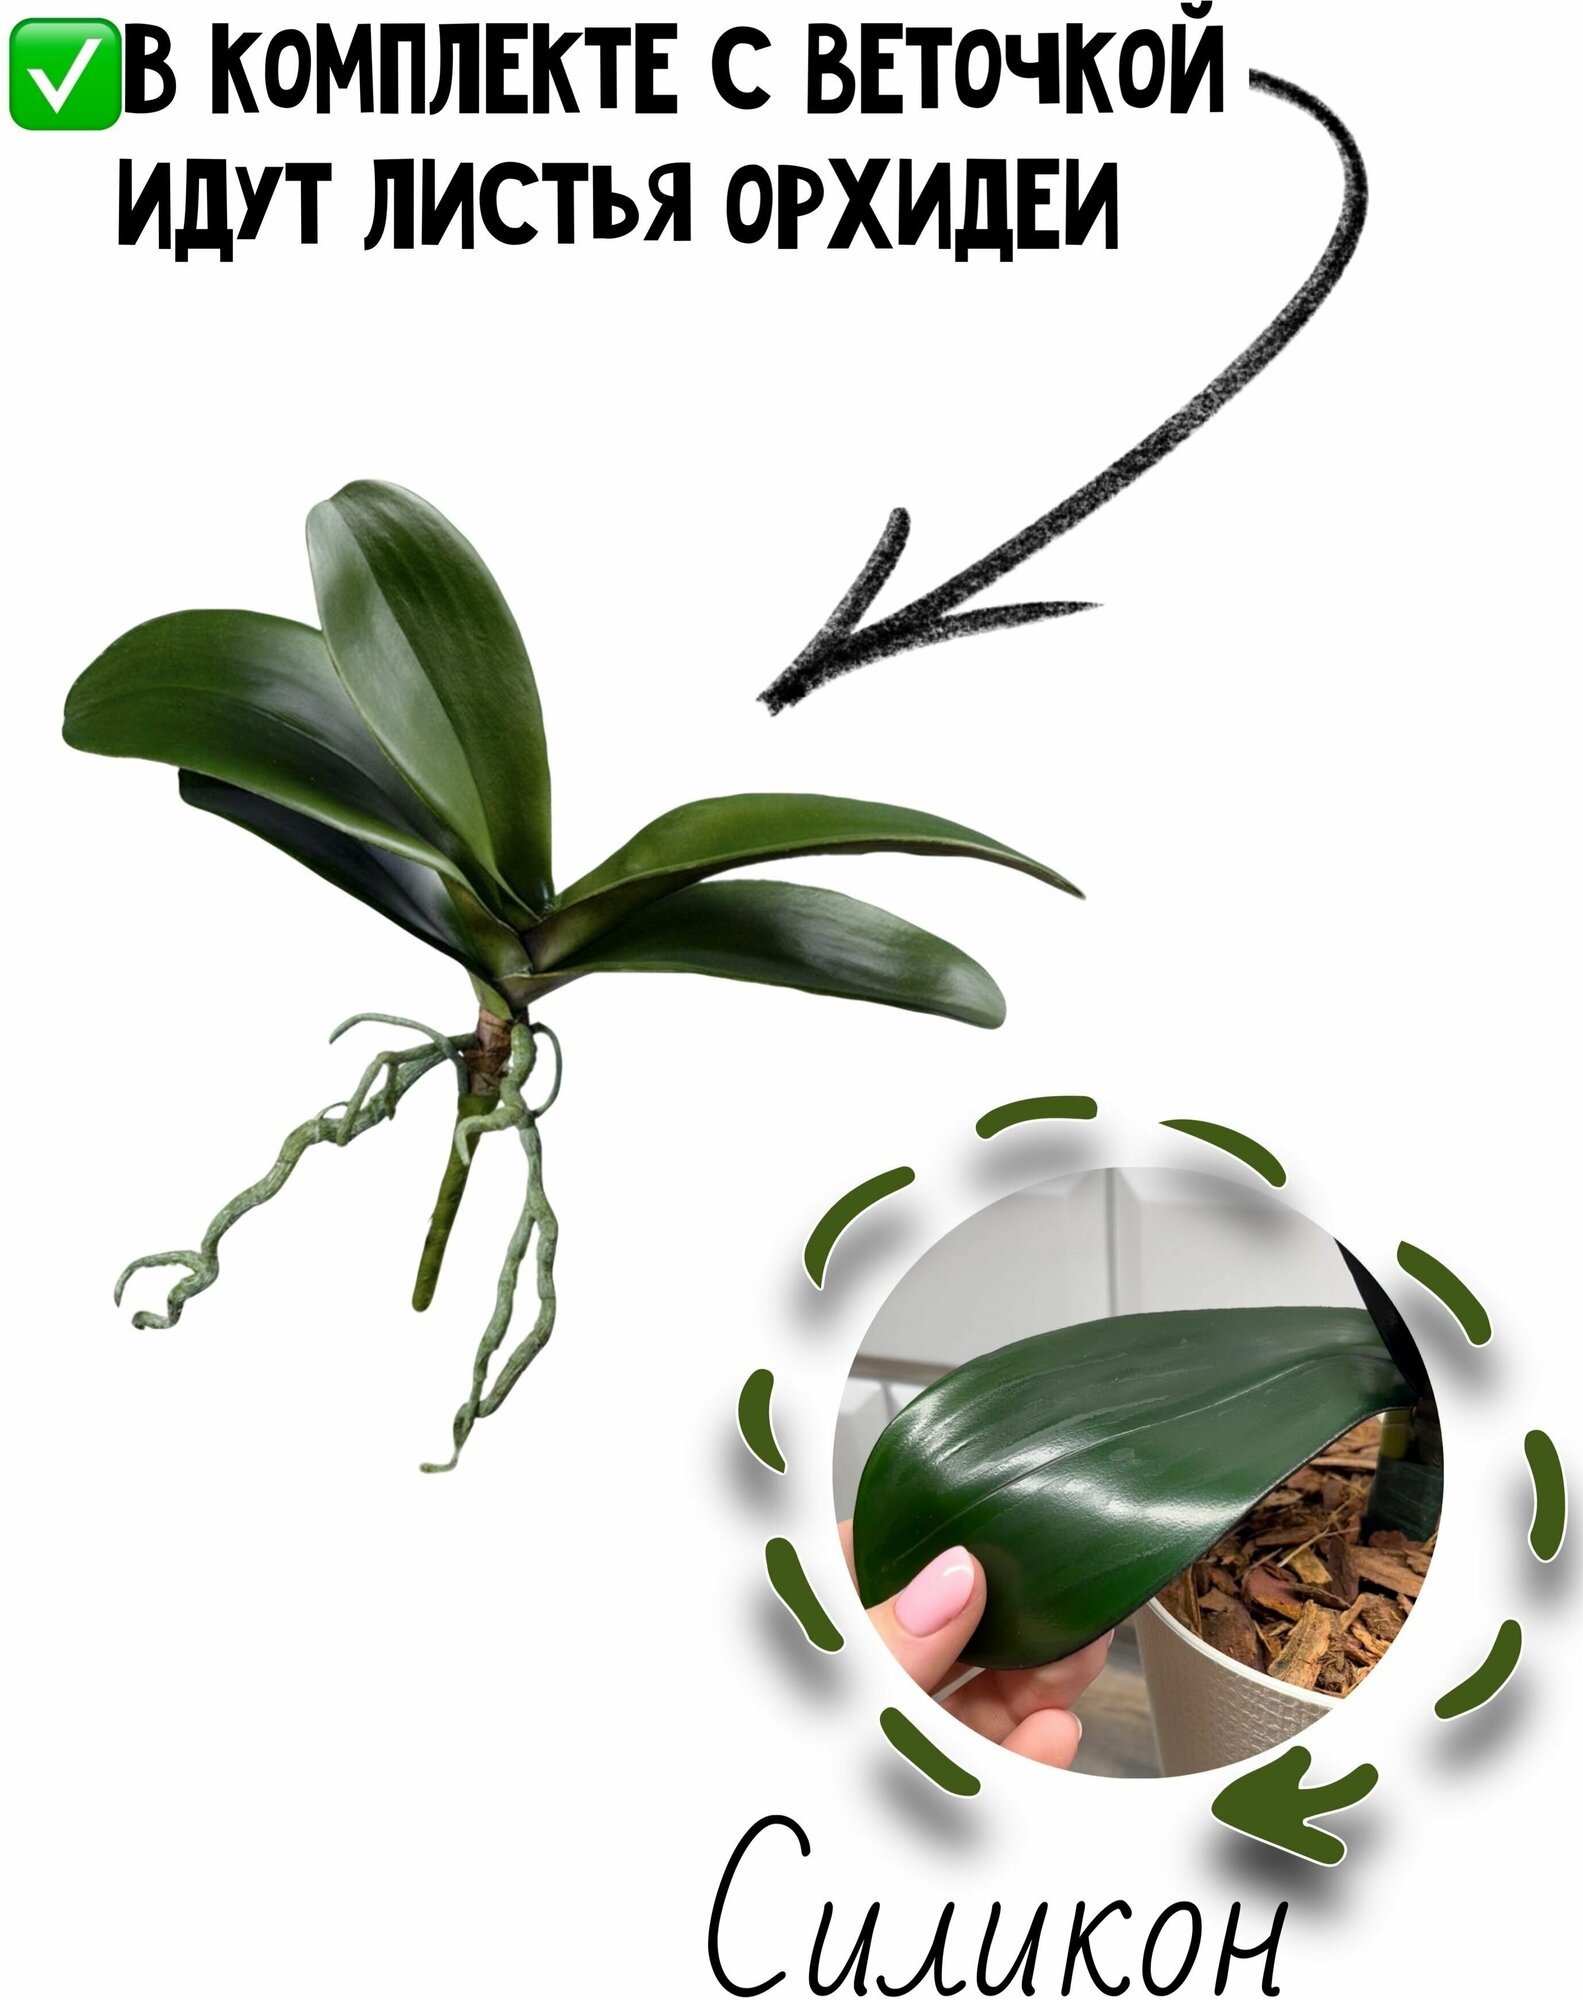 Орхидея из ЭКО-силикона - 55 см